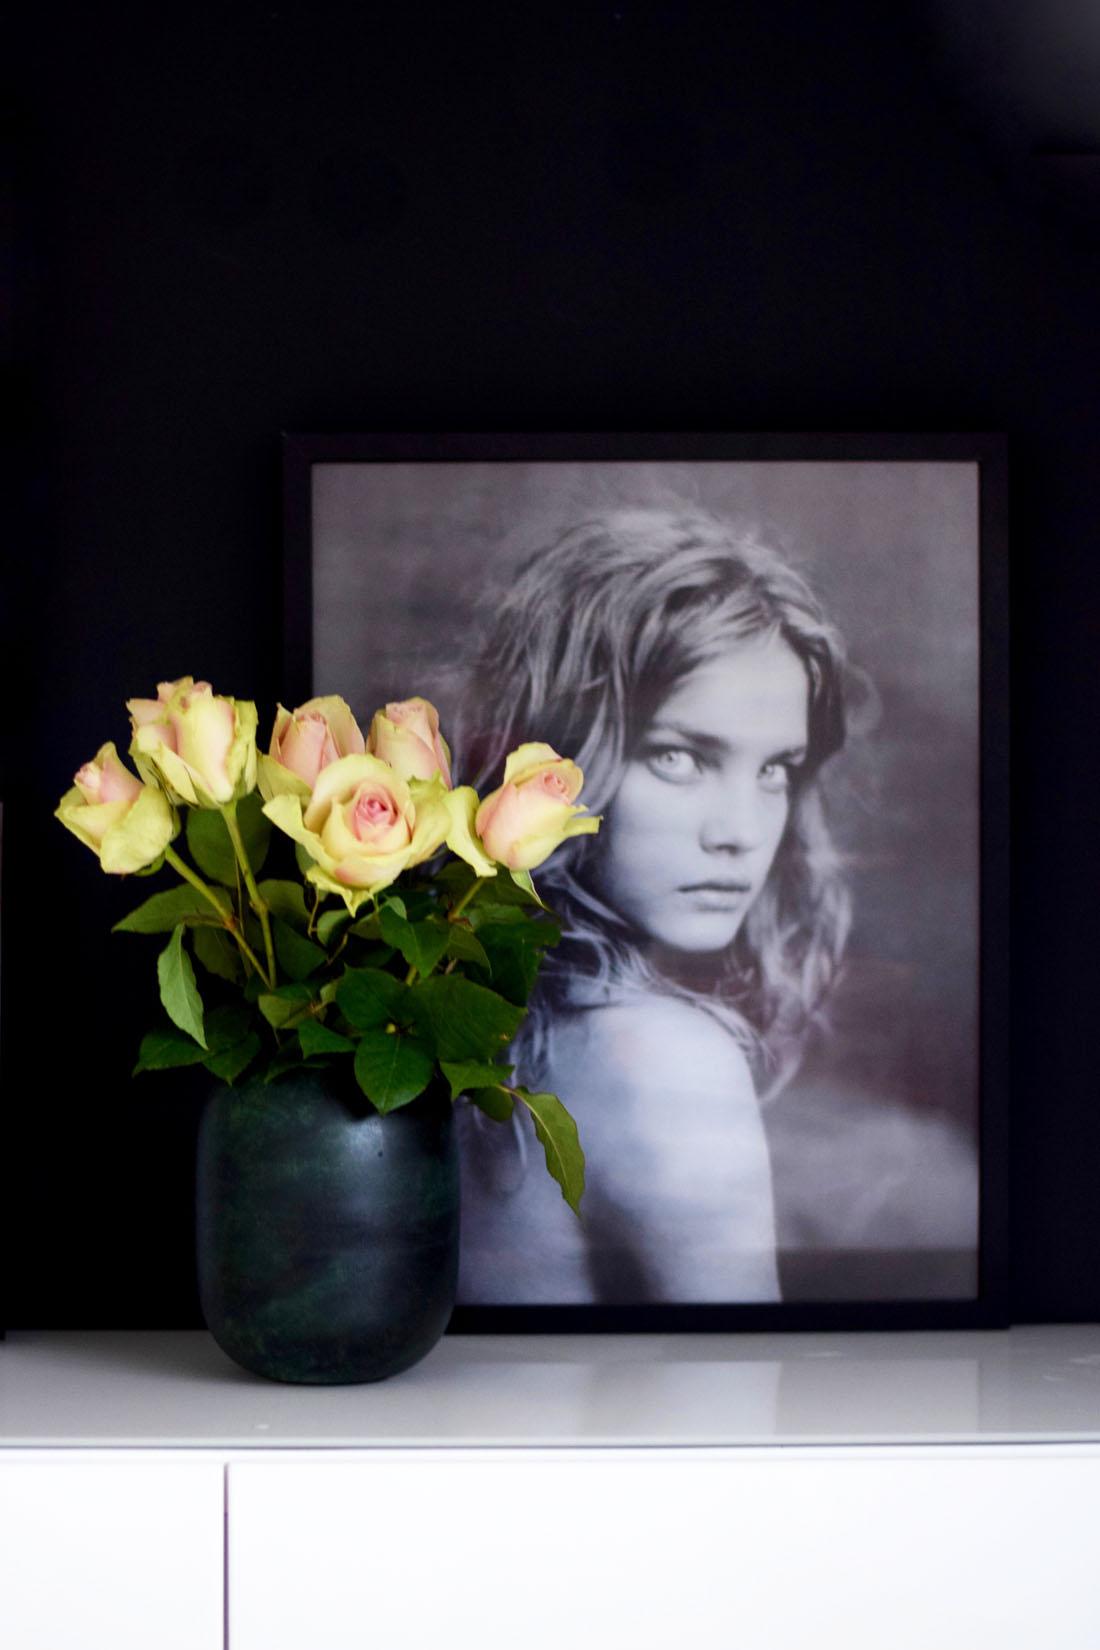 Frische Blumen sind ein Must-have bei mir.
#blumenliebe #vasenliebe #couchliebt #rosen #wallart